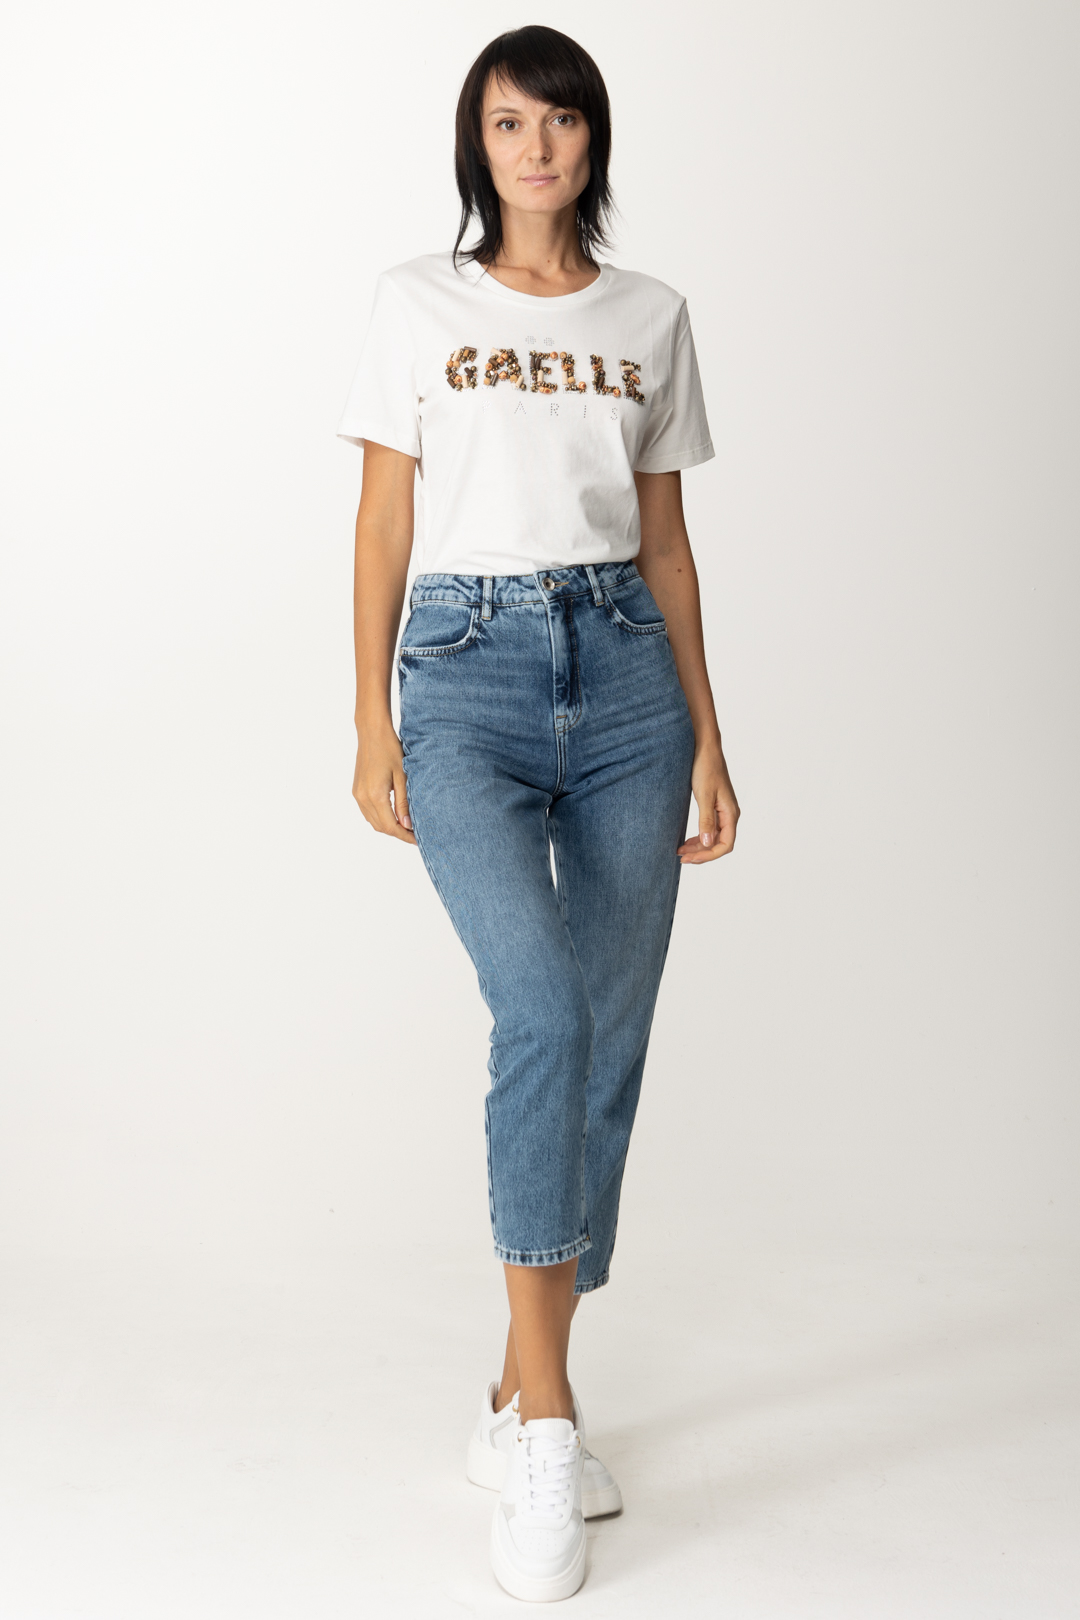 Vorschau: Gaelle Paris T-Shirt mit gesticktem Logo Offwhite